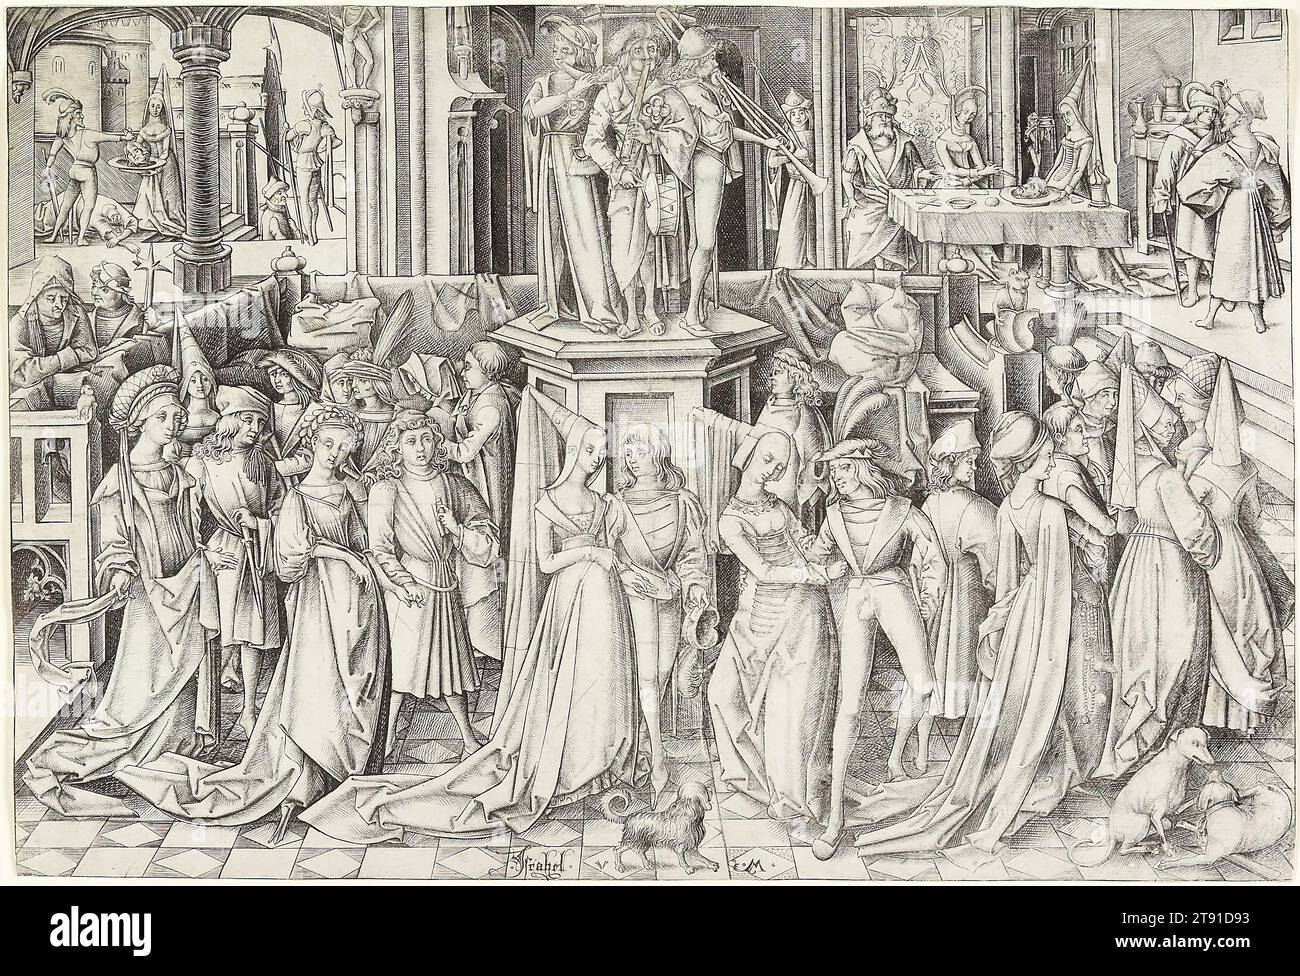 La danse à la cour d'Hérode, c. 1500, Israhel van Meckenem, allemand, c. 1445-1503, 8 7/16 x 12 3/8 po (21,43 x 31,43 cm) (image), gravure, Allemagne, 15e-16e siècle, Israhel van Meckenem a mis en scène cette histoire embellie de l'Évangile en costume contemporain, c. 1500. La musique et la danse nous accueillent aux festivités à la cour d'Hérode, roi de Judée, mais il y a des ennuis à pied. Jean-Baptiste avait été emprisonné auparavant pour avoir critiqué Hérode pour avoir épousé Hérodias, qui avait divorcé du demi-frère d'Hérode. Pendant la fête, Hérodias a vu sa chance de se venger encore plus. Banque D'Images